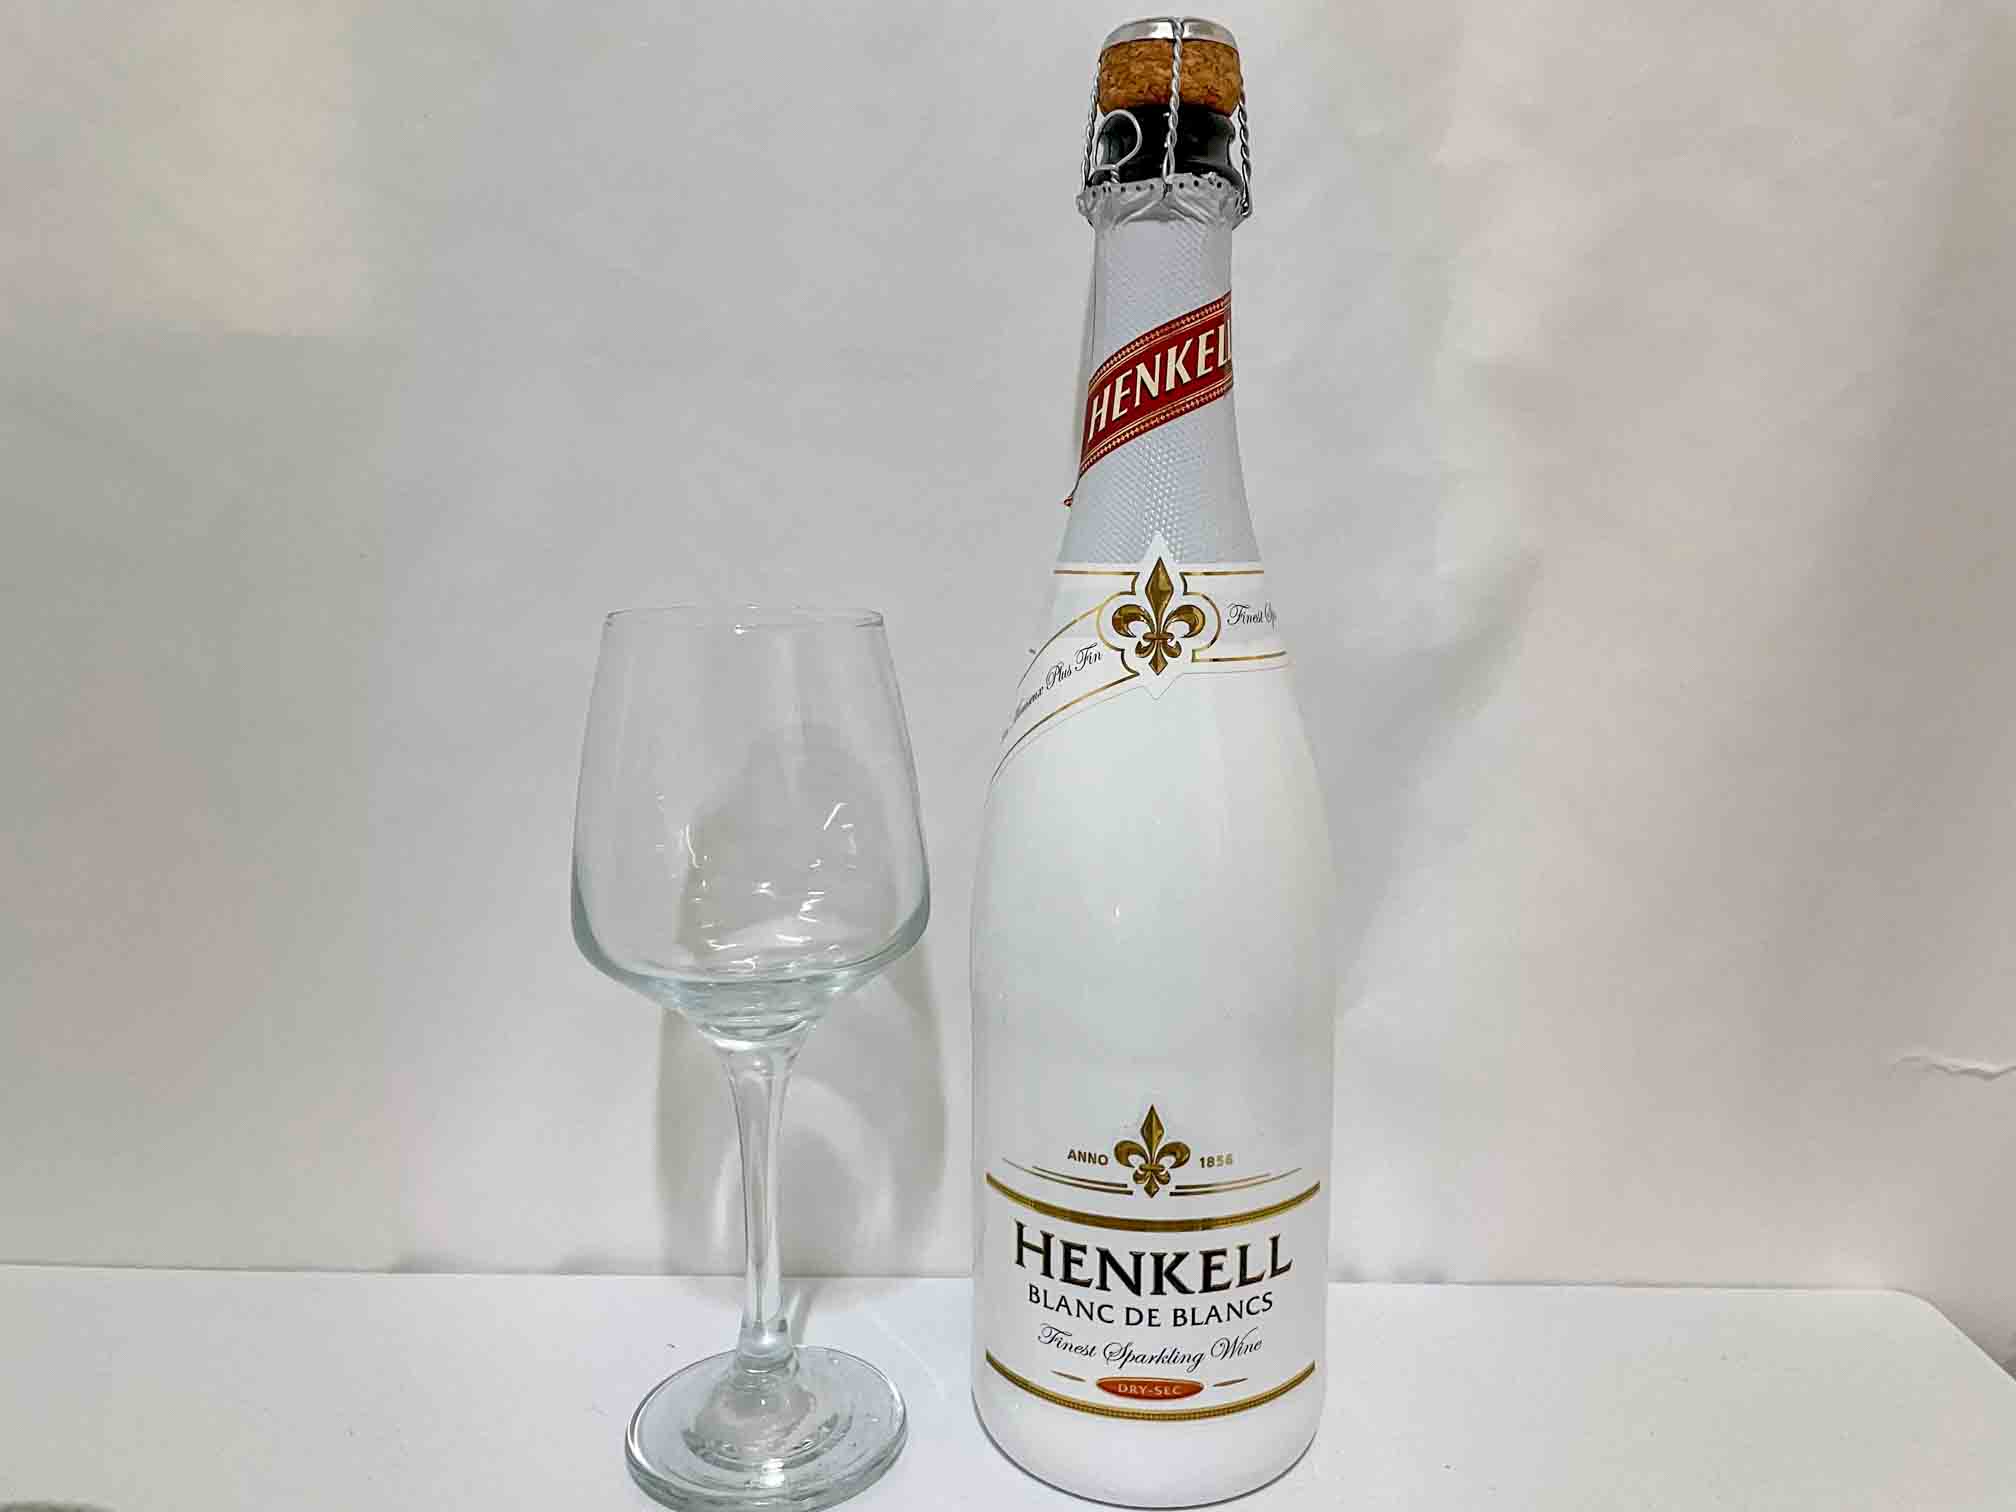 헨켈 블랑 드 블랑 (Henkell Blanc de Blancs)